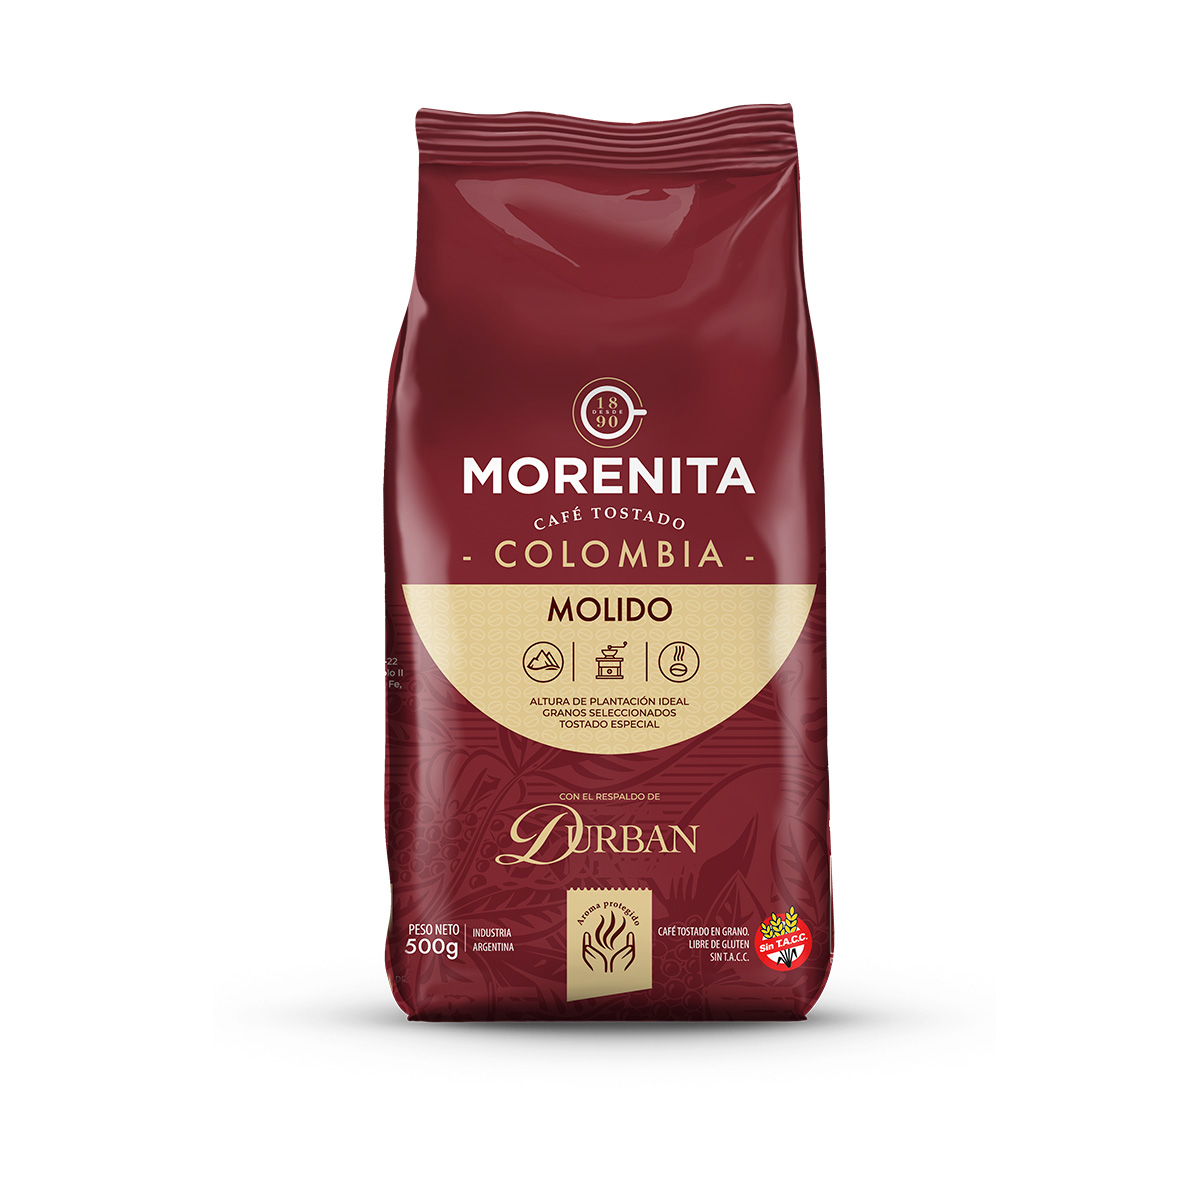 Cafe Molido Blend Italiano La Morenita 250 Gr - arcordiezb2c